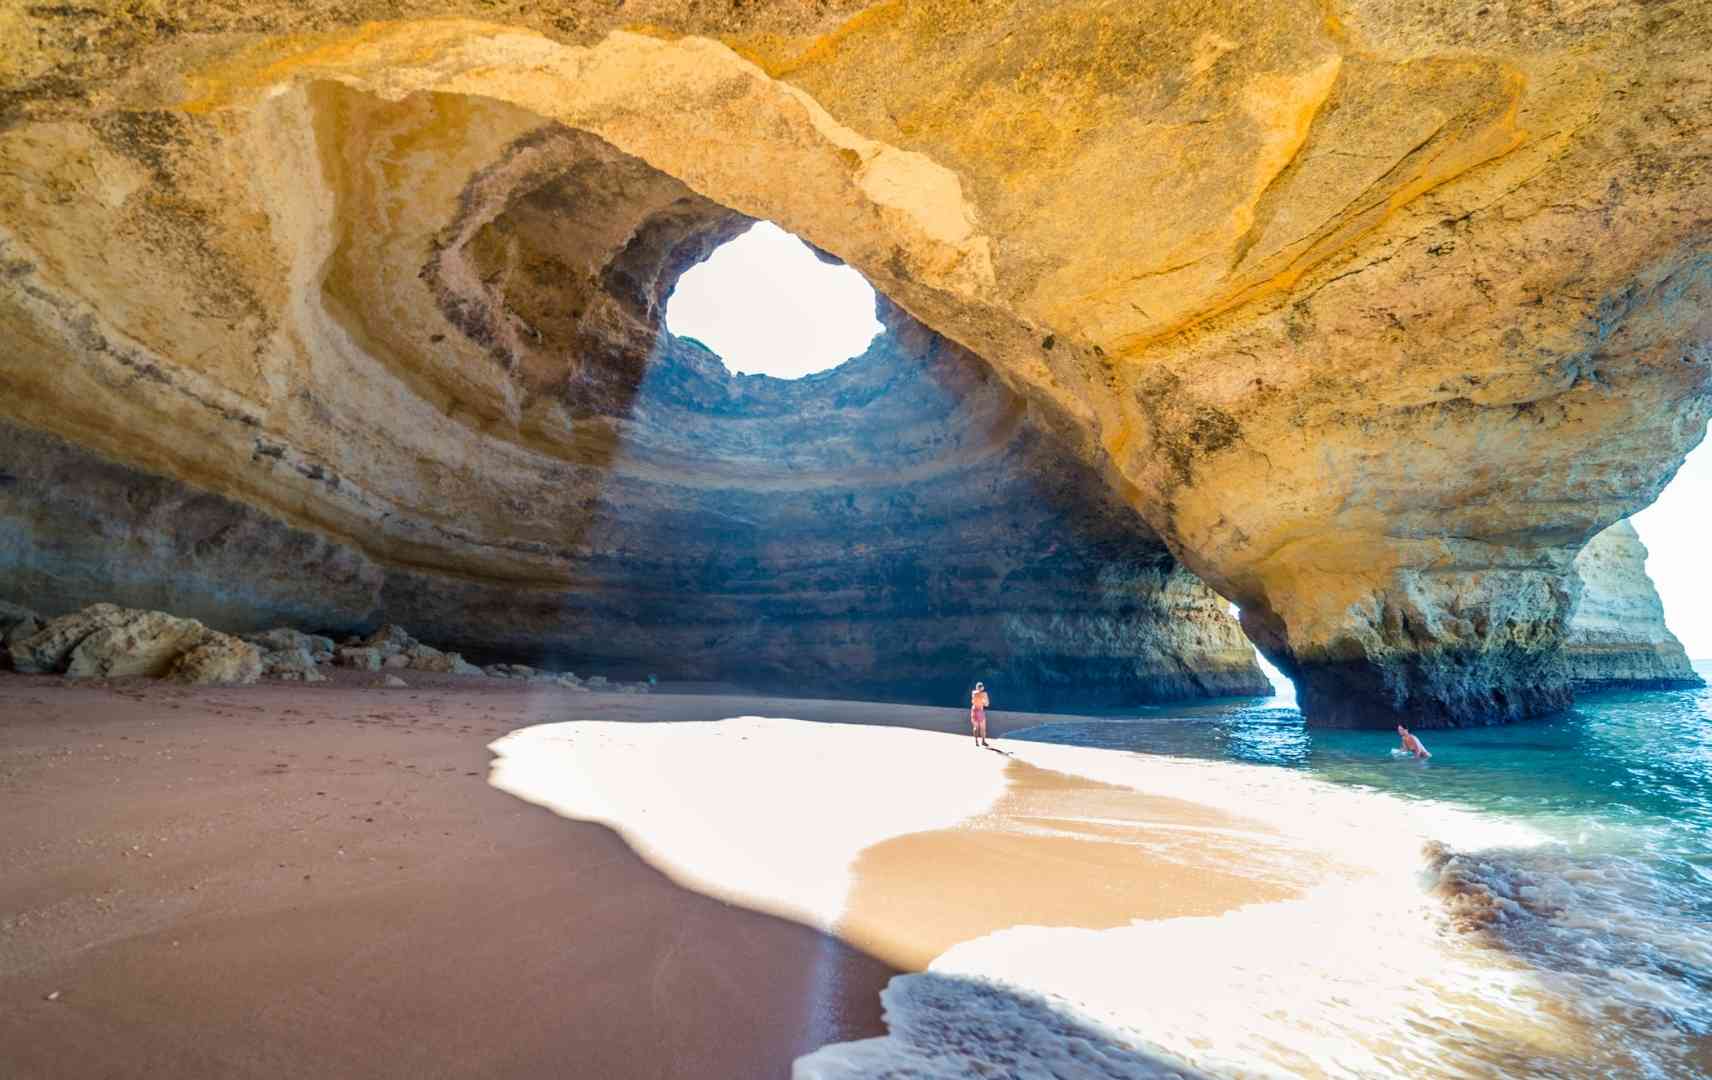 Portugal Urlaub an der Algarve